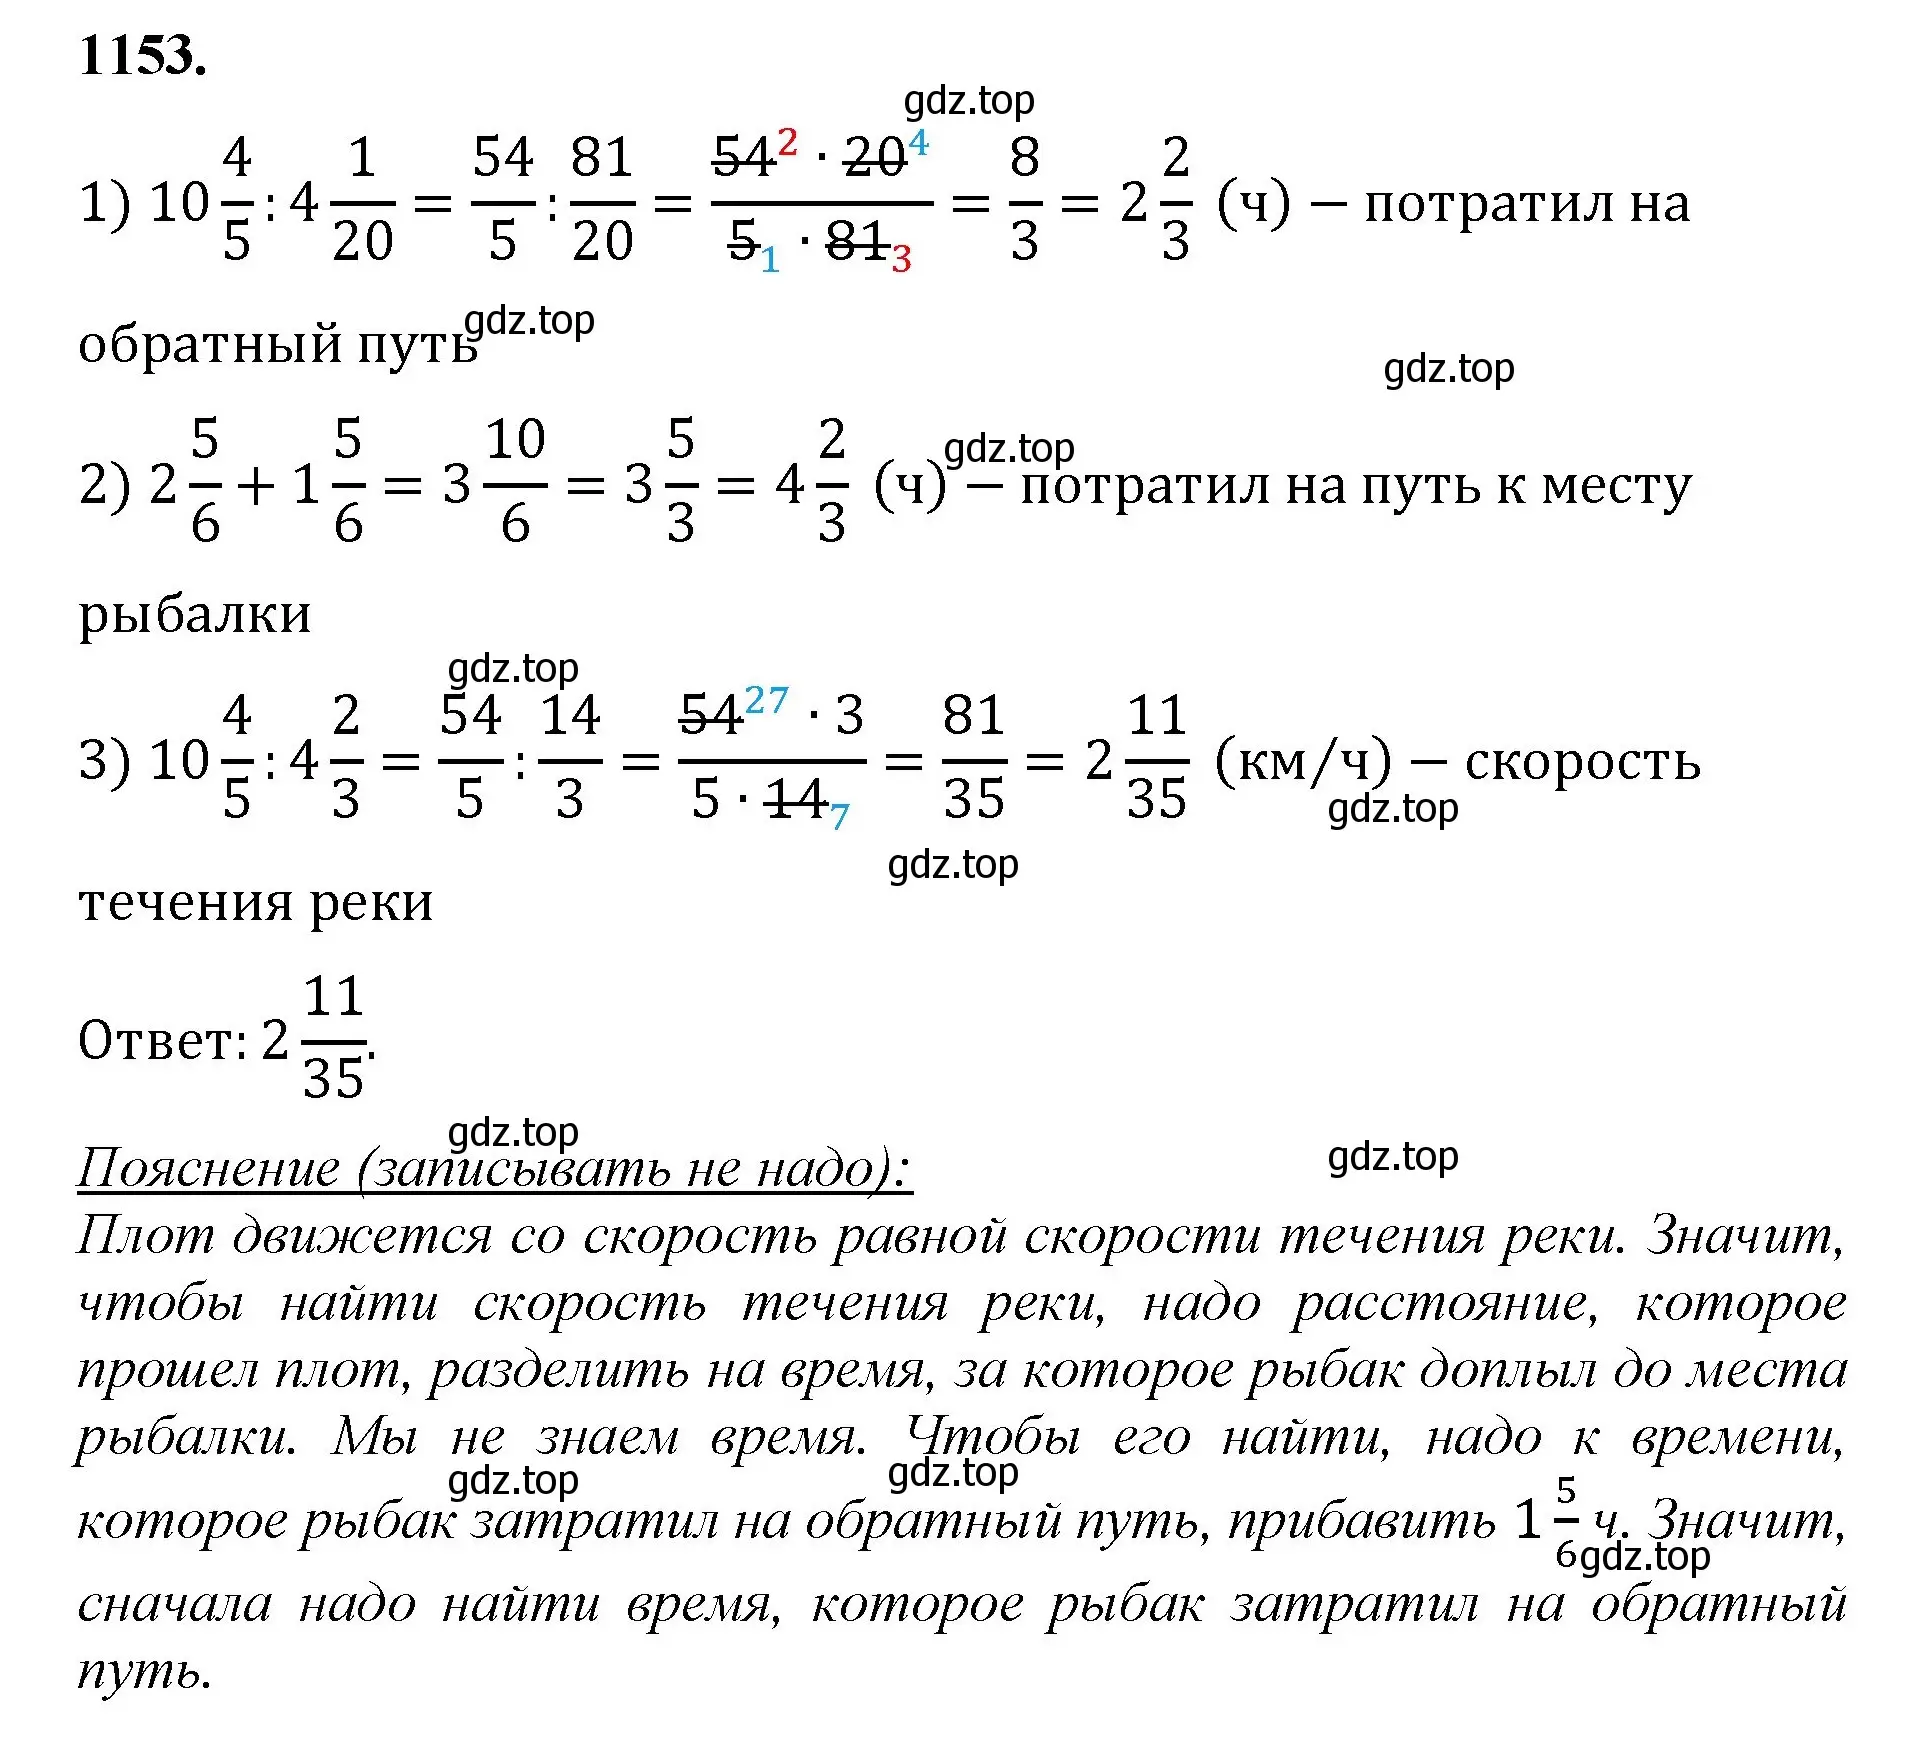 Решение номер 1153 (страница 255) гдз по математике 5 класс Мерзляк, Полонский, учебник